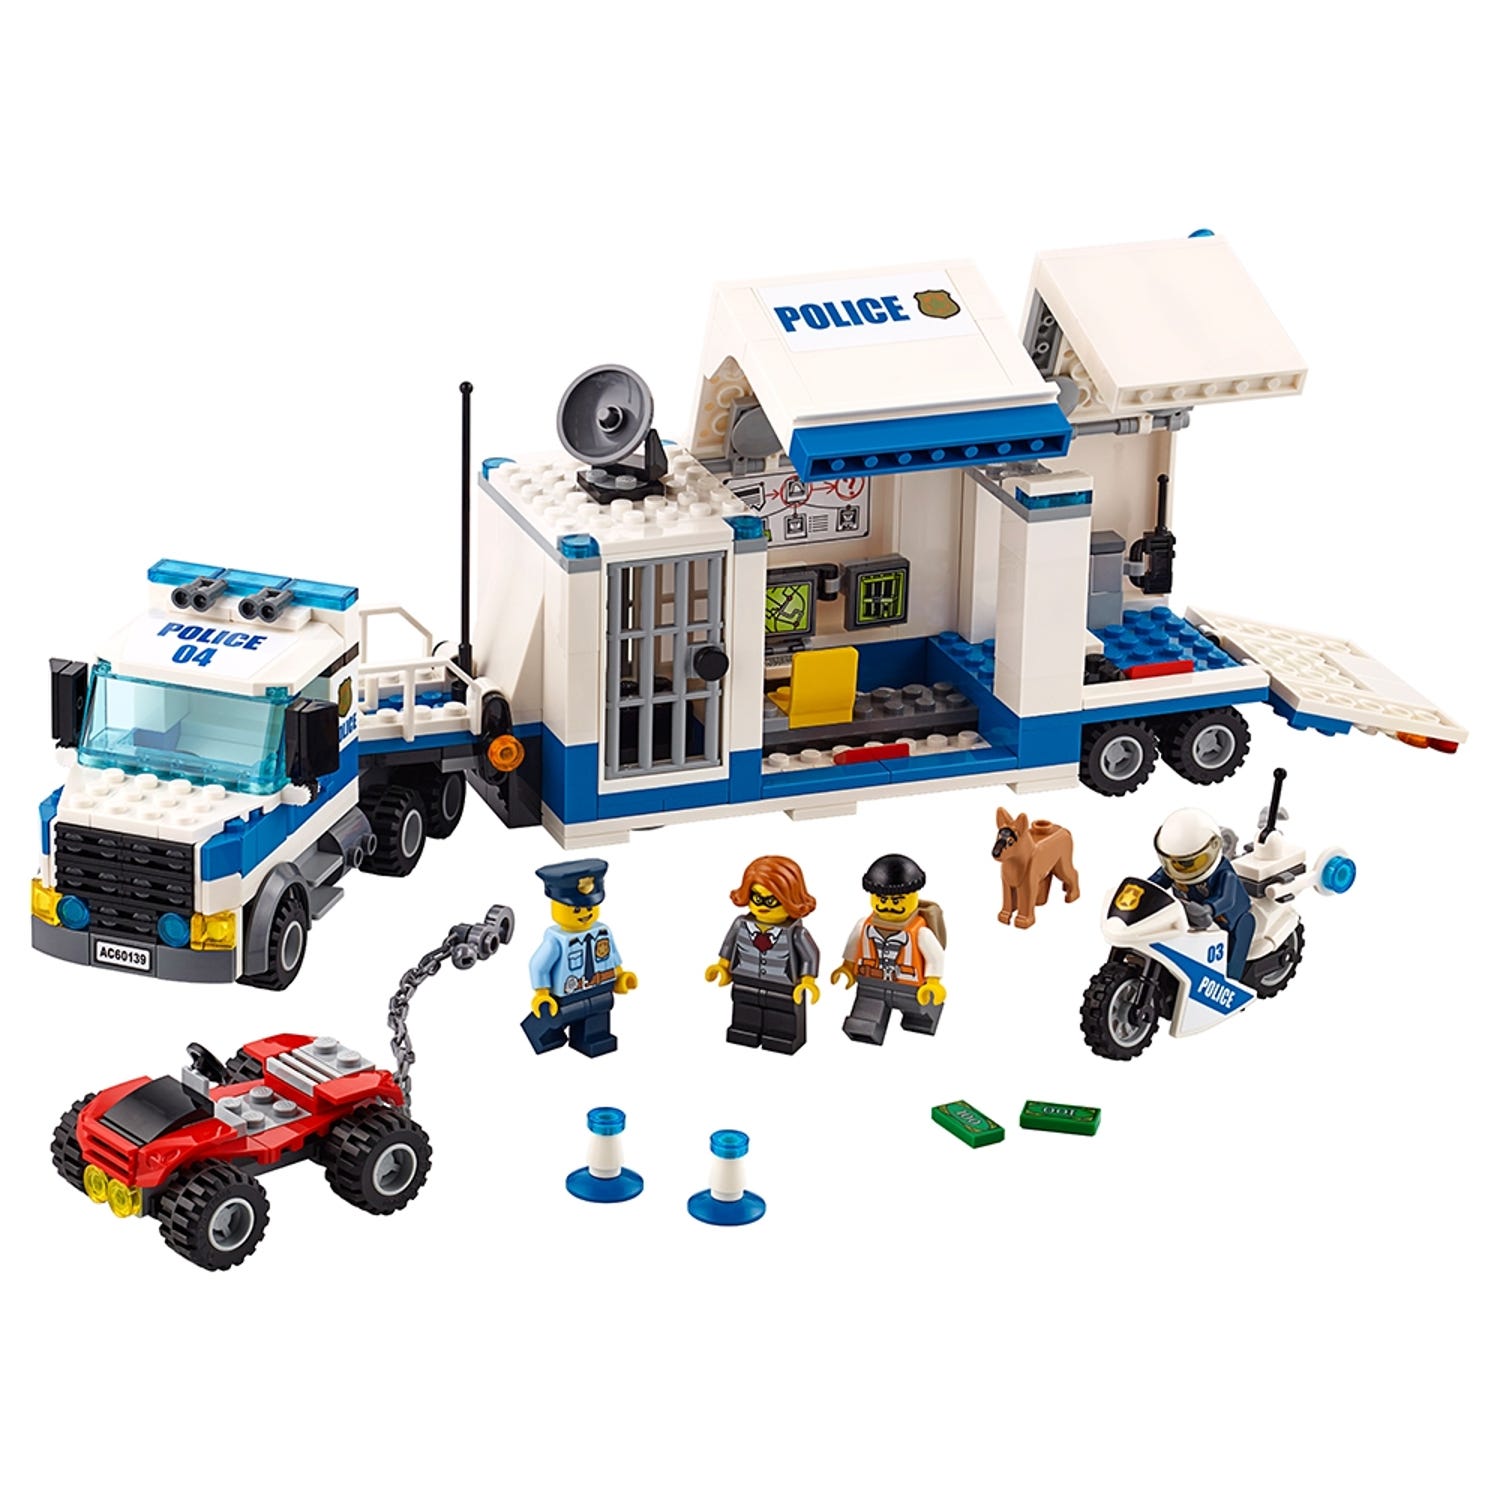 Tilmeld hænge marionet Mobil kommandocentral 60139 | City | Officiel LEGO® Shop DK